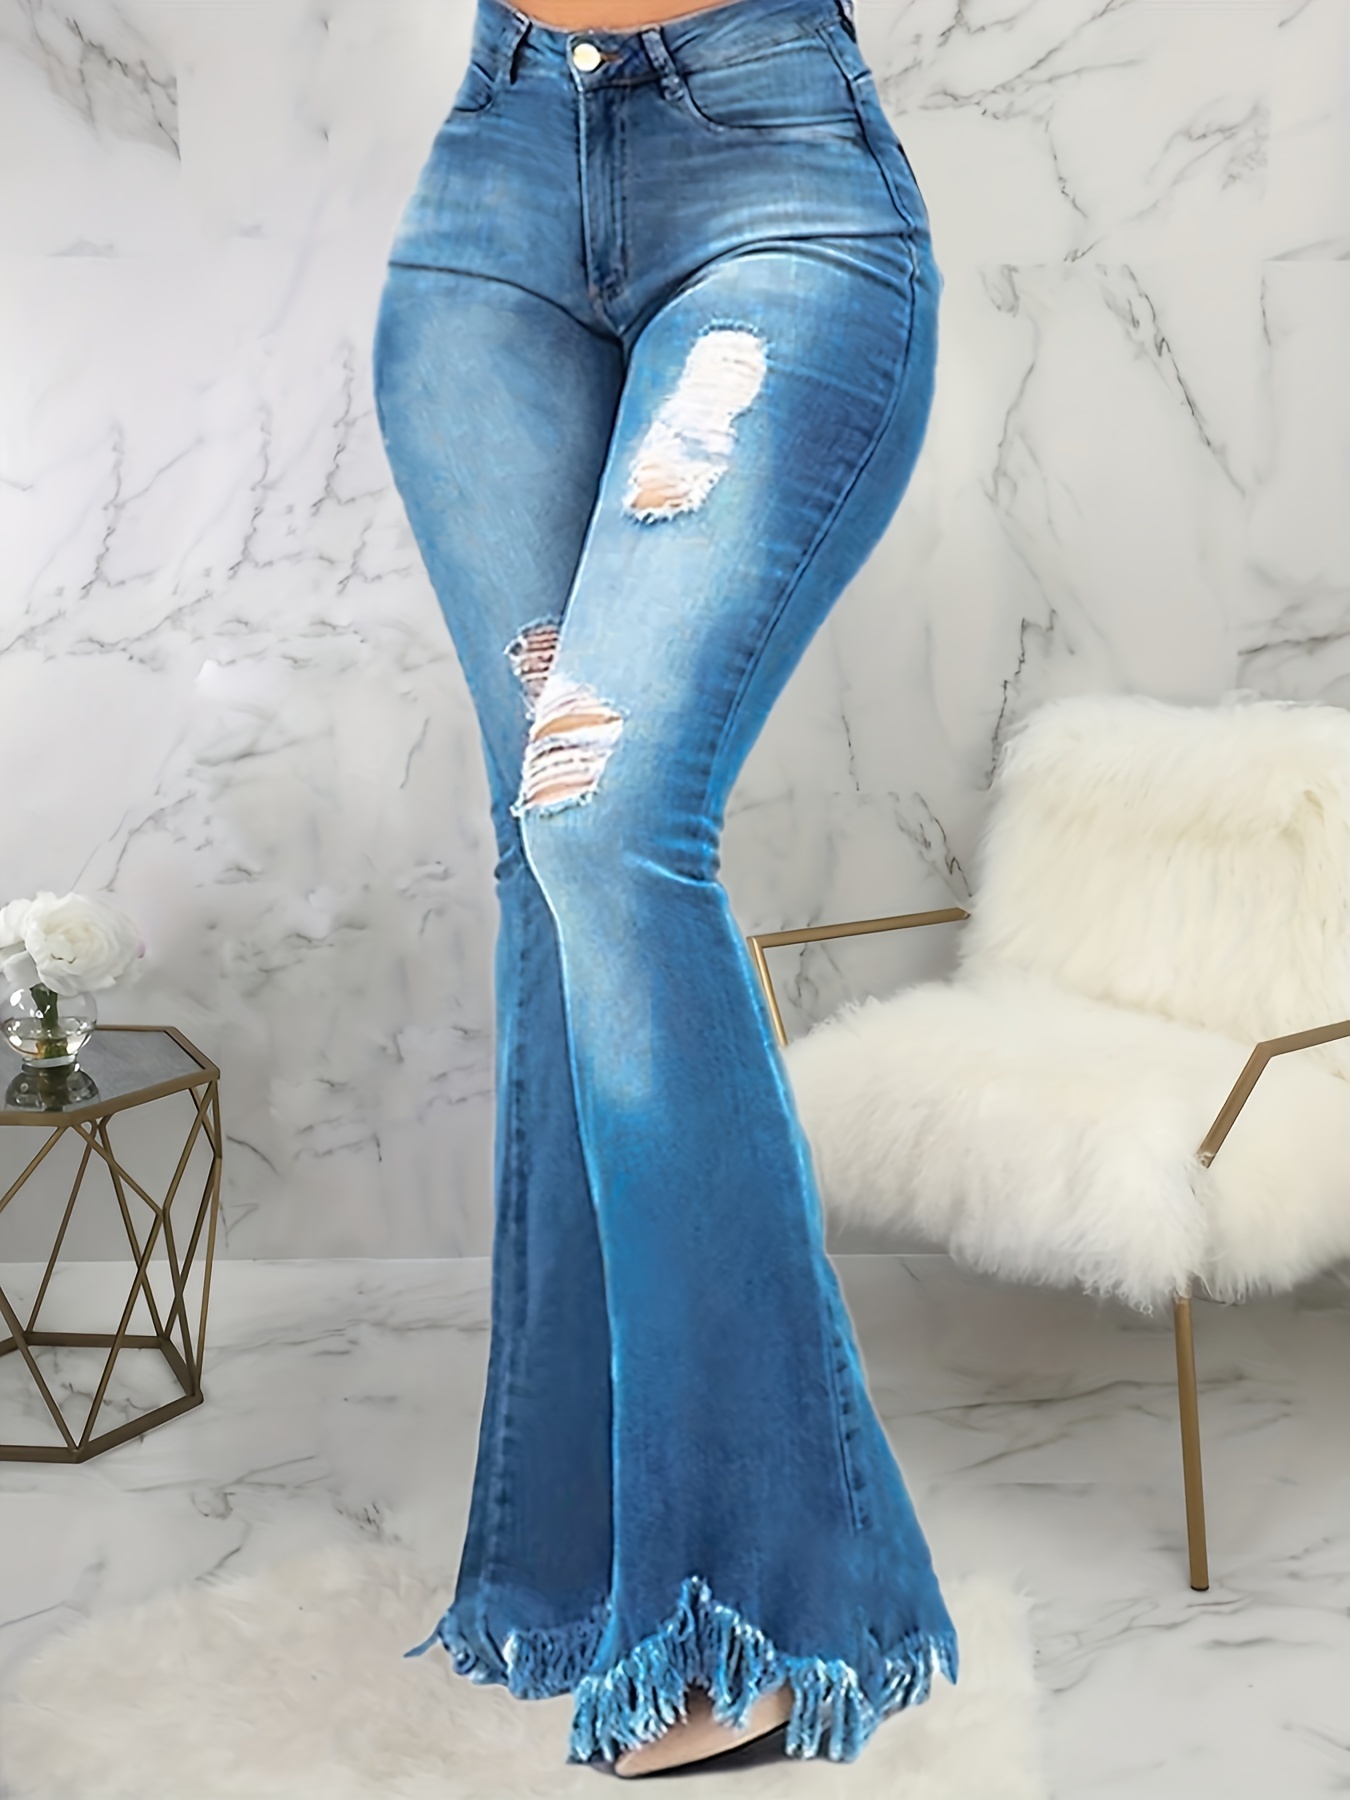 Jeans de cintura alta com buracos rasgados, boca de sino, pernas largas,  acabamento cru, calças jeans desgastadas, jeans e roupas femininas